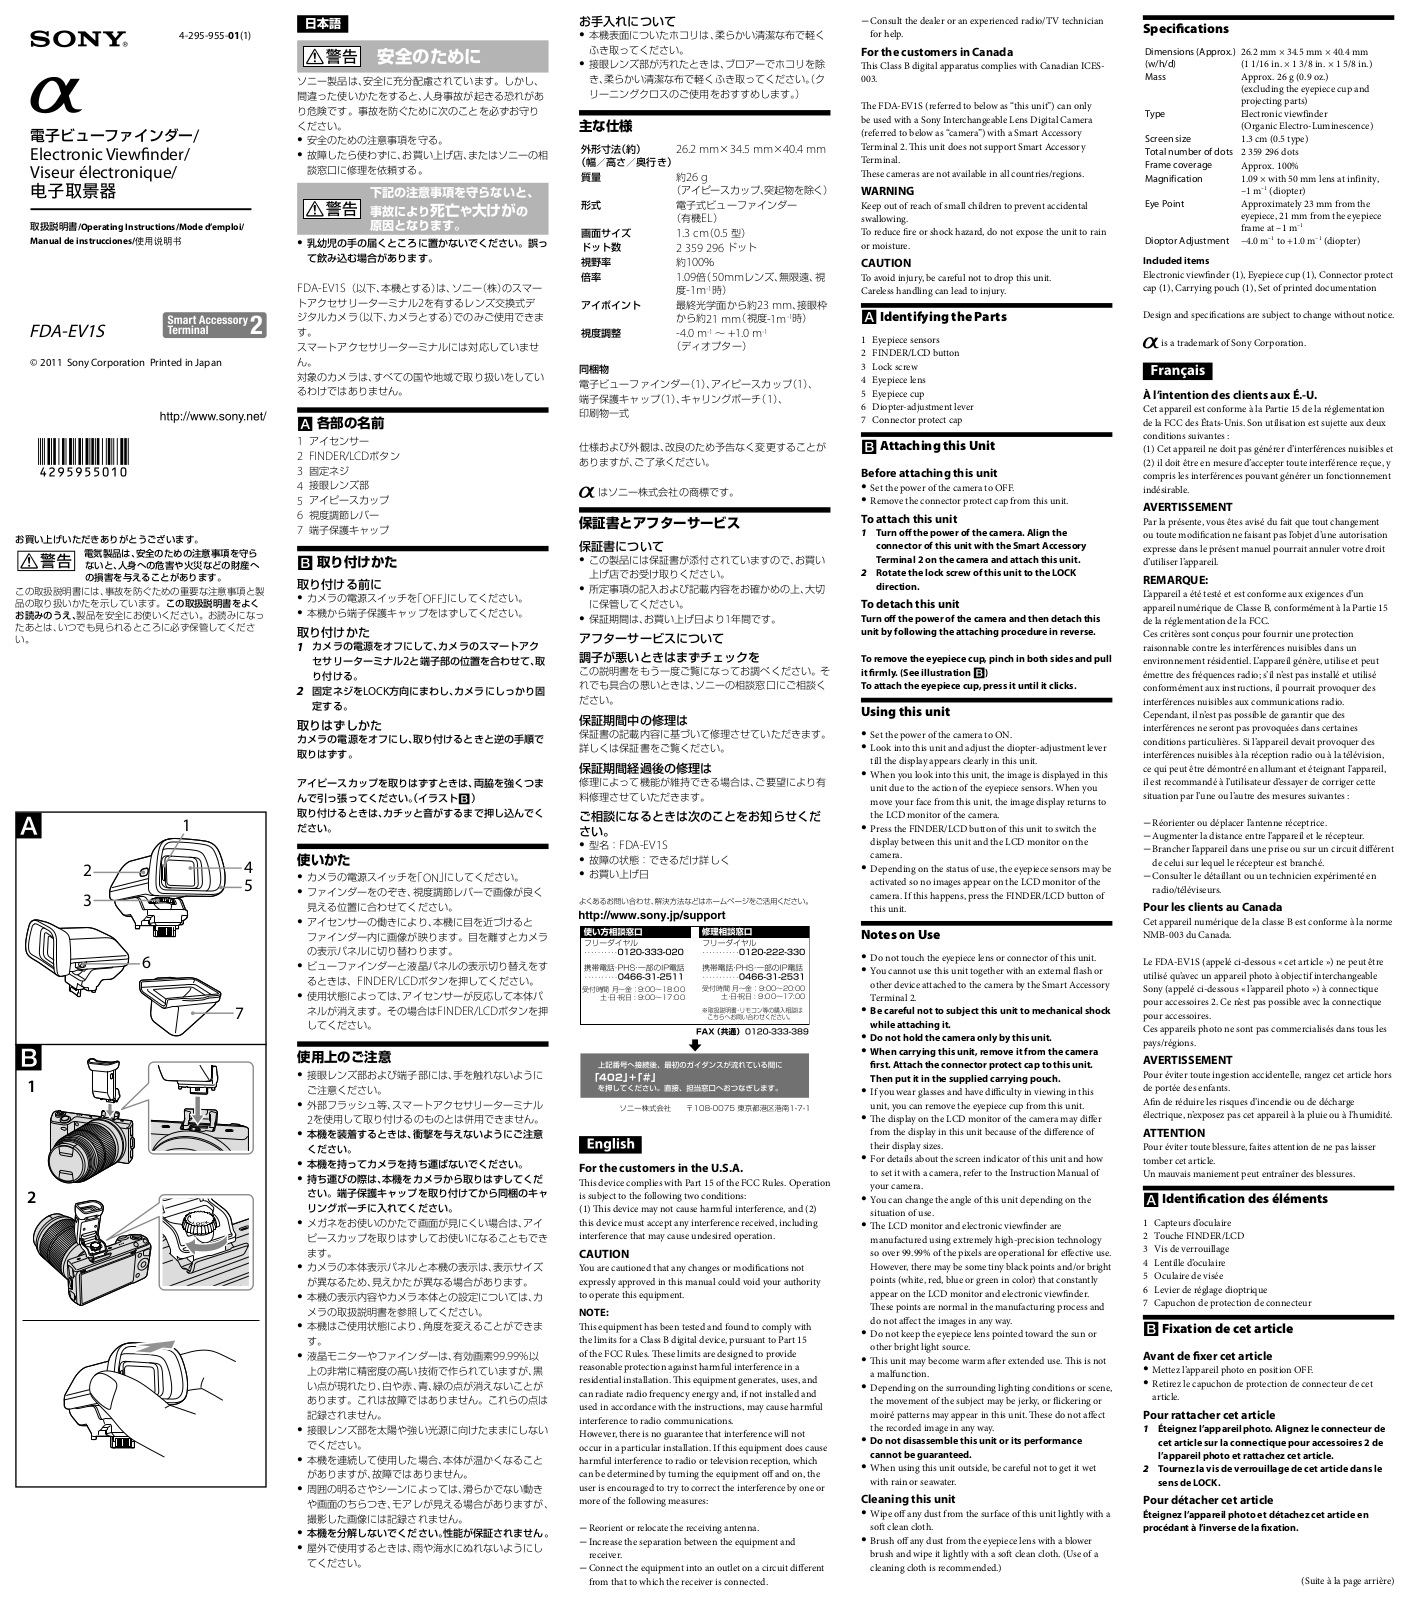 Sony FDA-EV1S User Manual